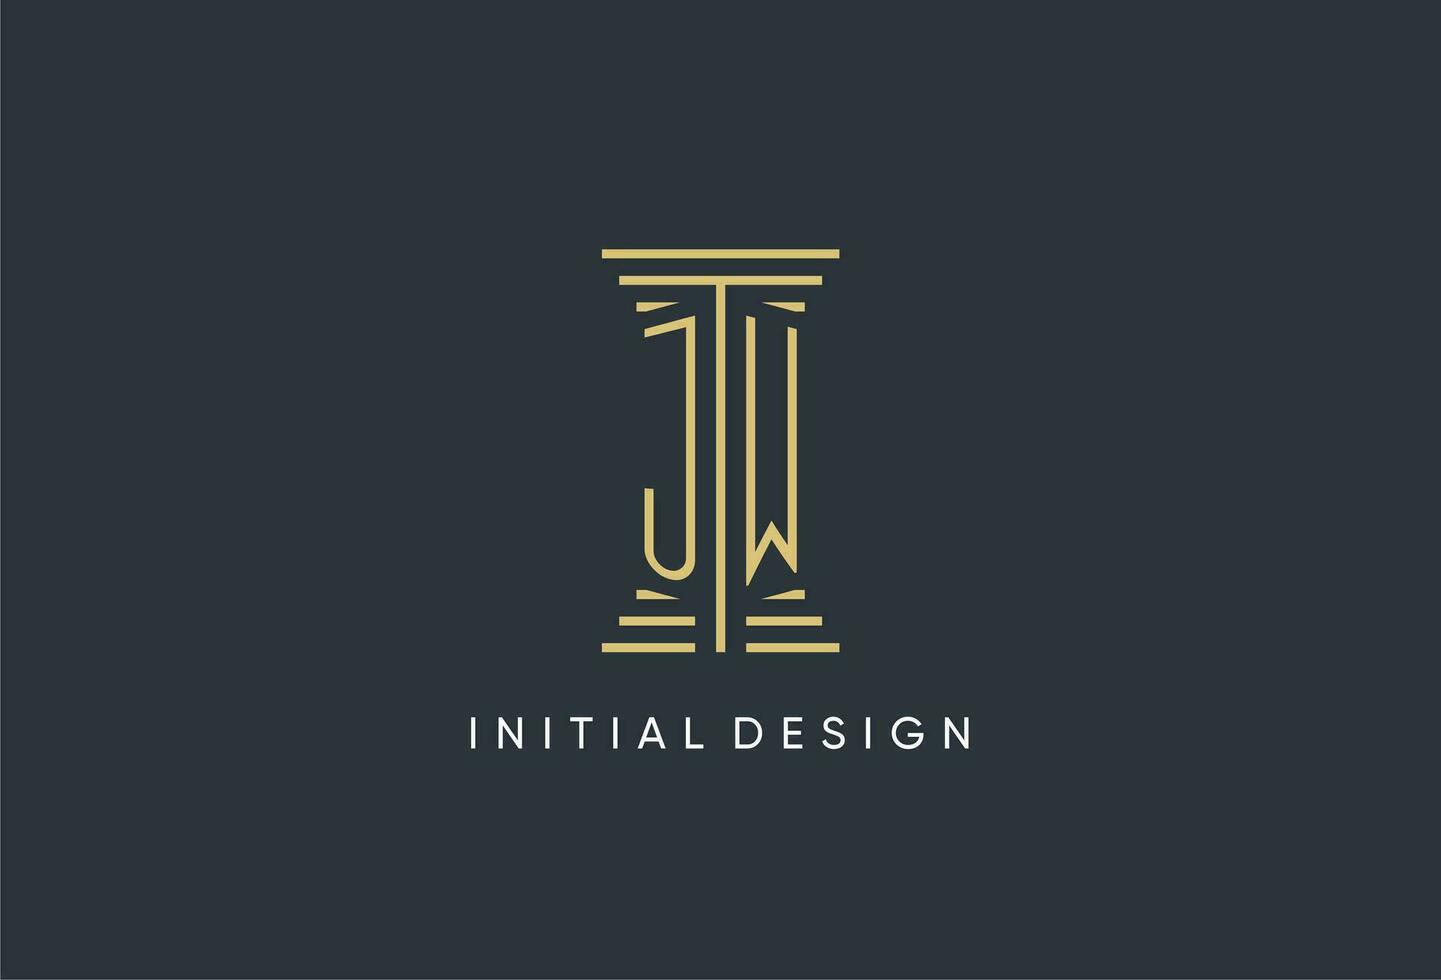 jw Initiale Monogramm mit Säule gestalten Logo Design vektor